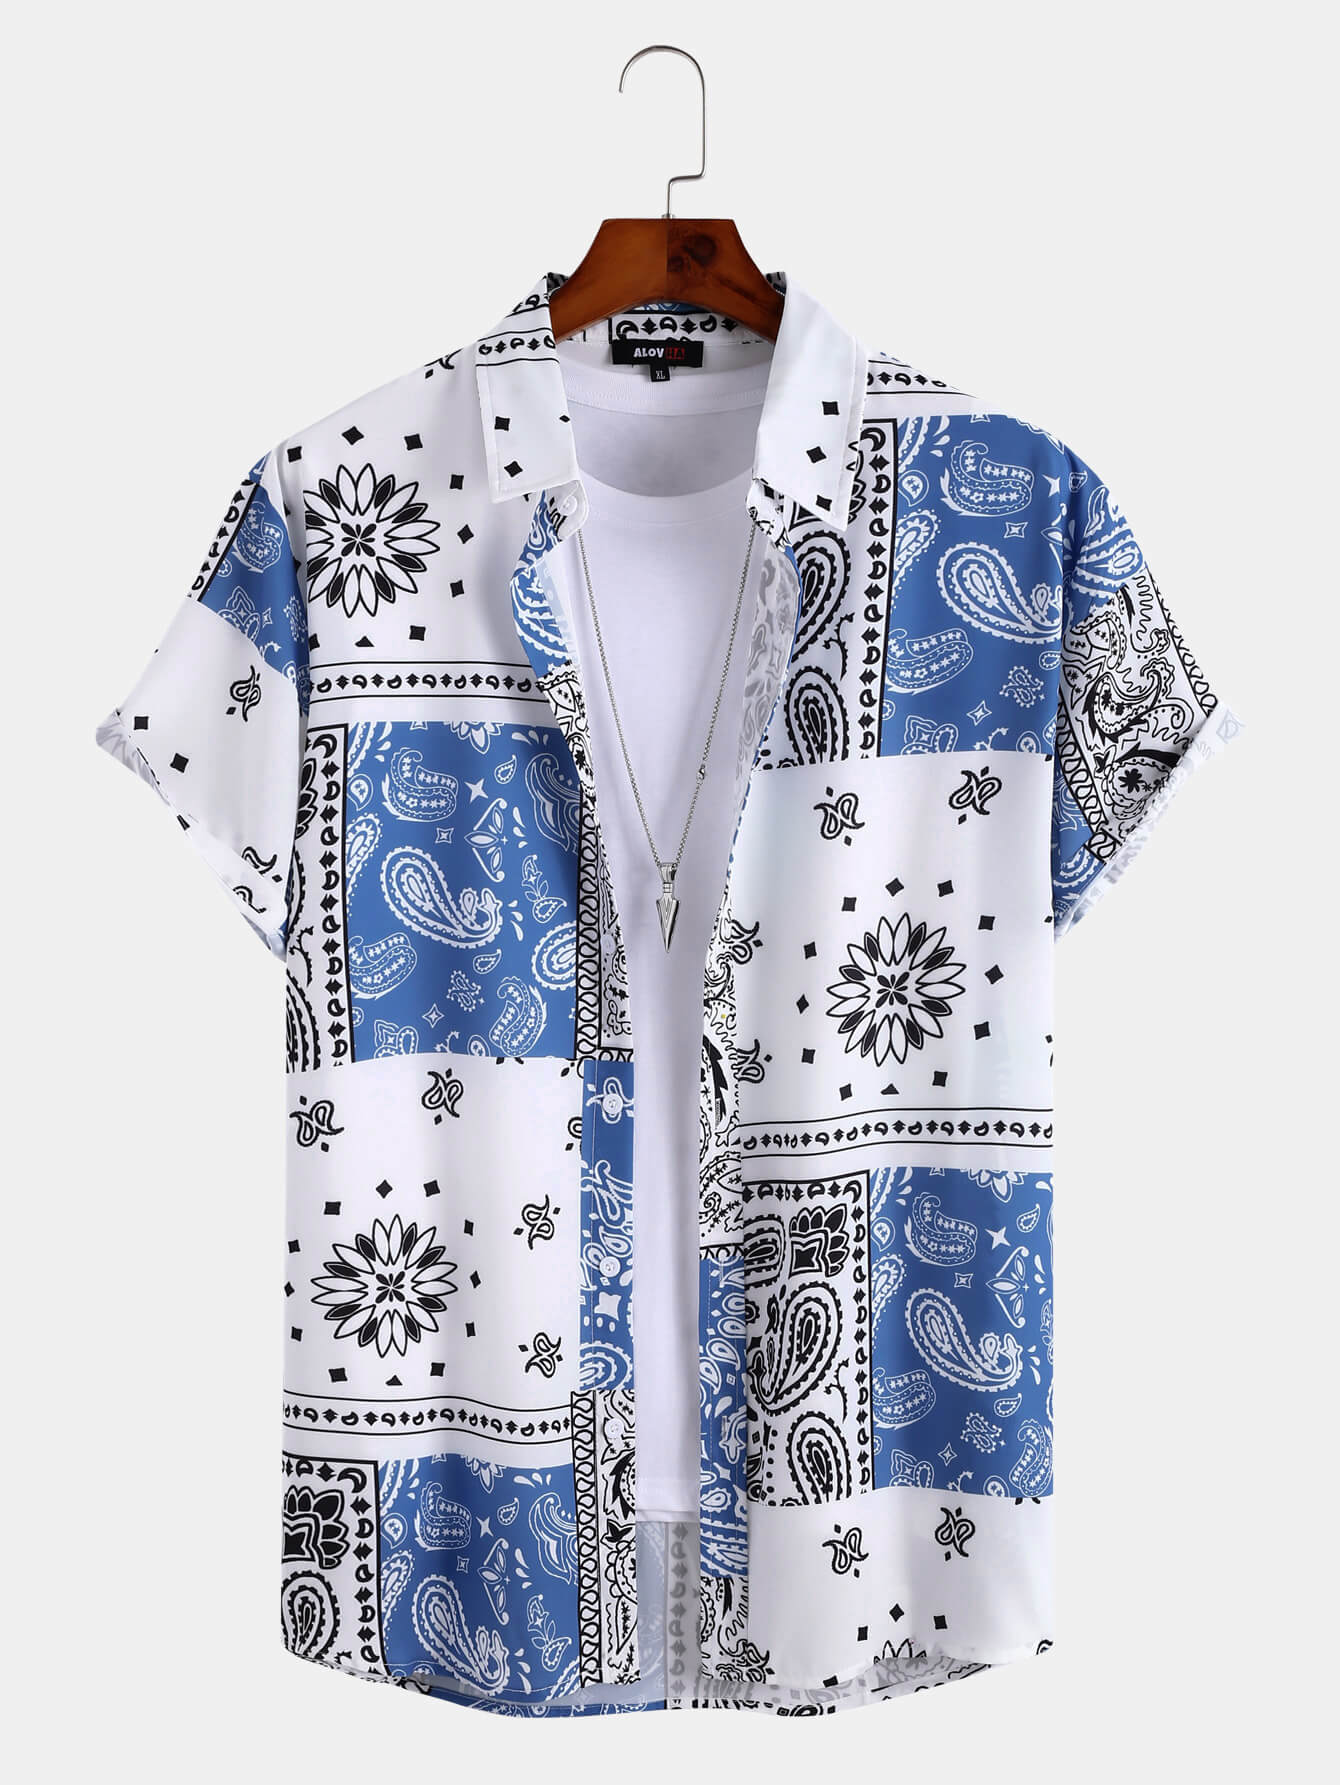 Camicia da uomo a maniche corte con bottoni a maniche corte in stile etnico con stampa floreale Paisley